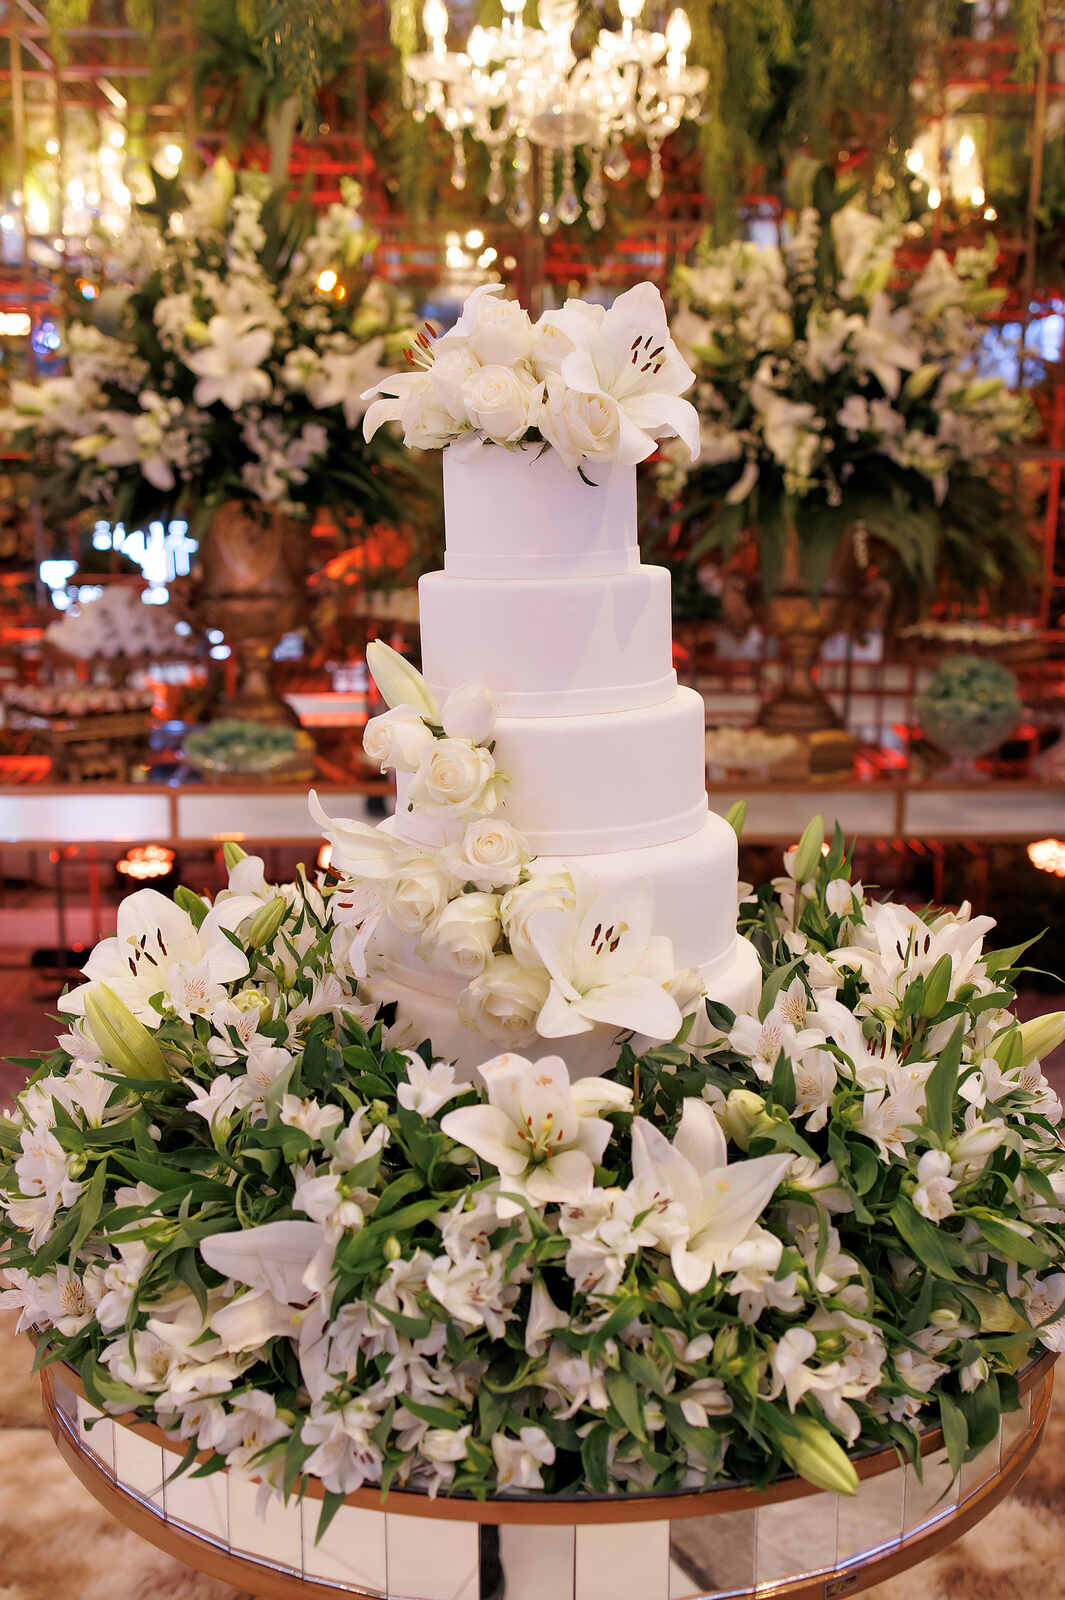 bolo de casamento clássico com cinco andares com lírios brancos no topo